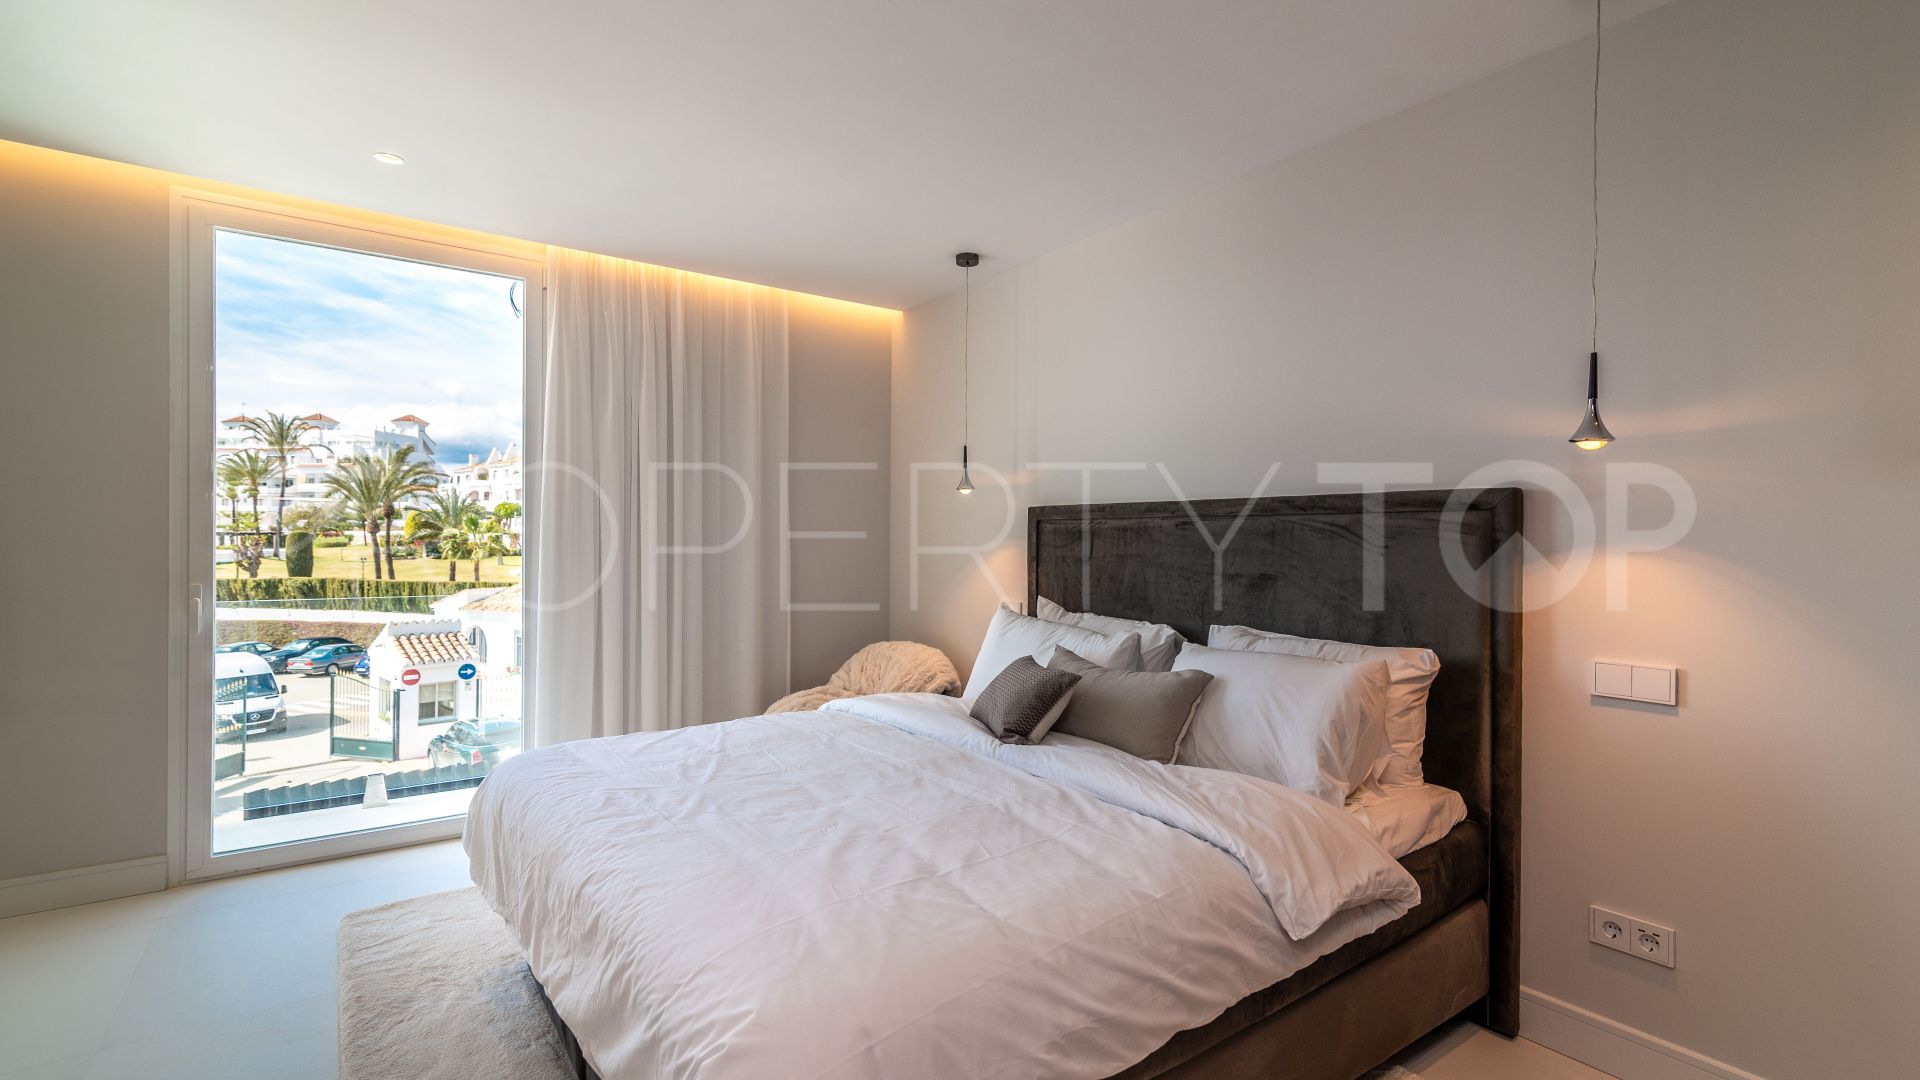 Villa for sale in Marbella - Puerto Banus with 8 bedrooms